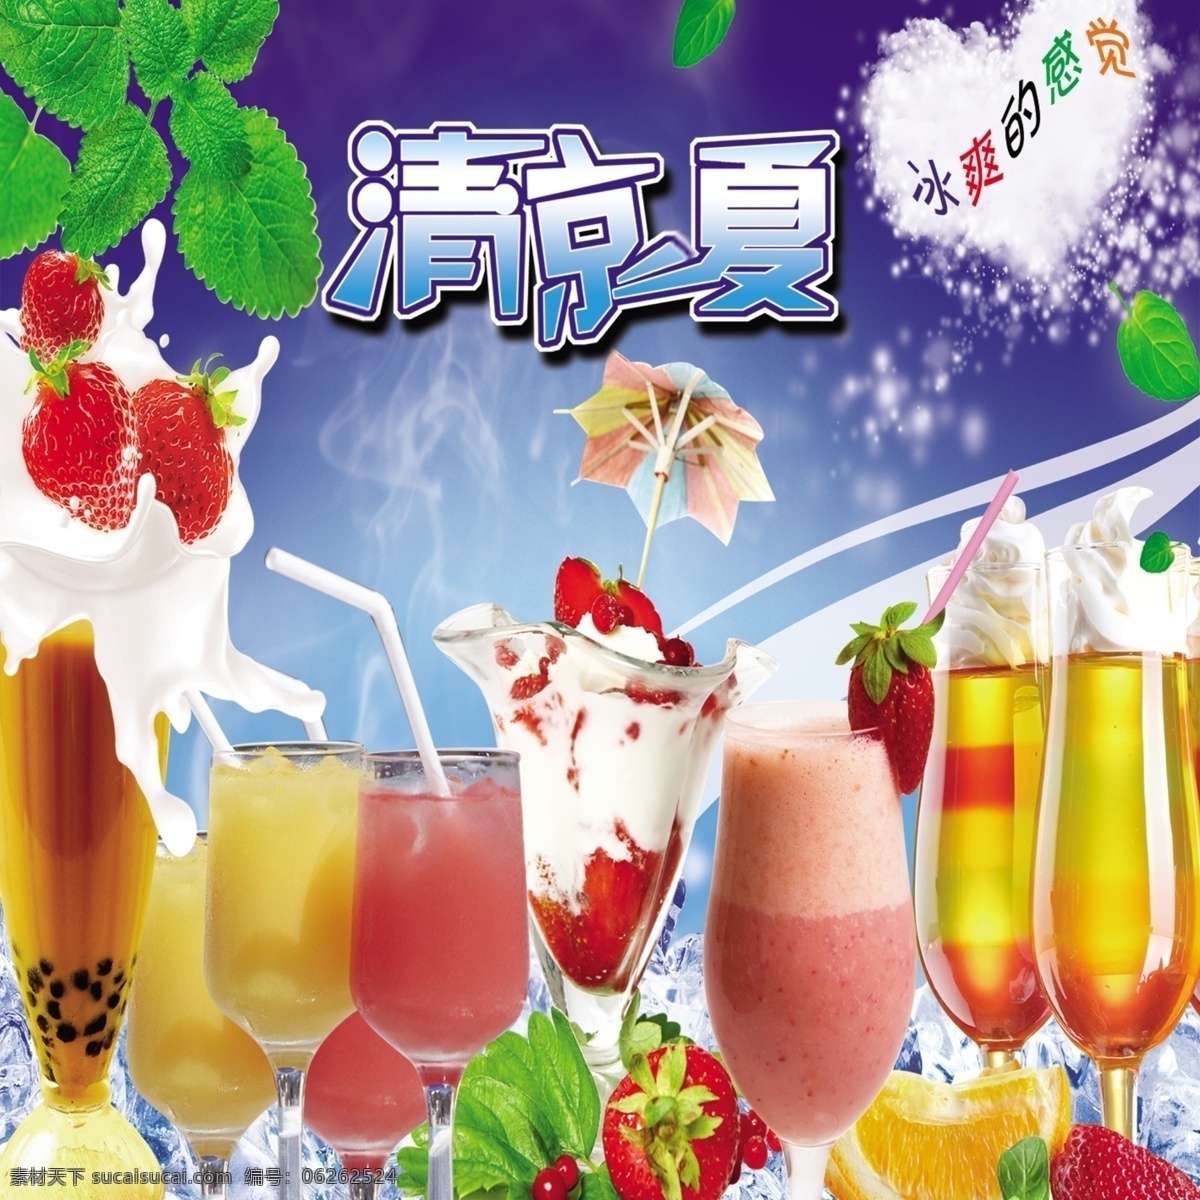 鲜果汁 草莓 柠檬 香橙 果汁 杯子 室外广告设计